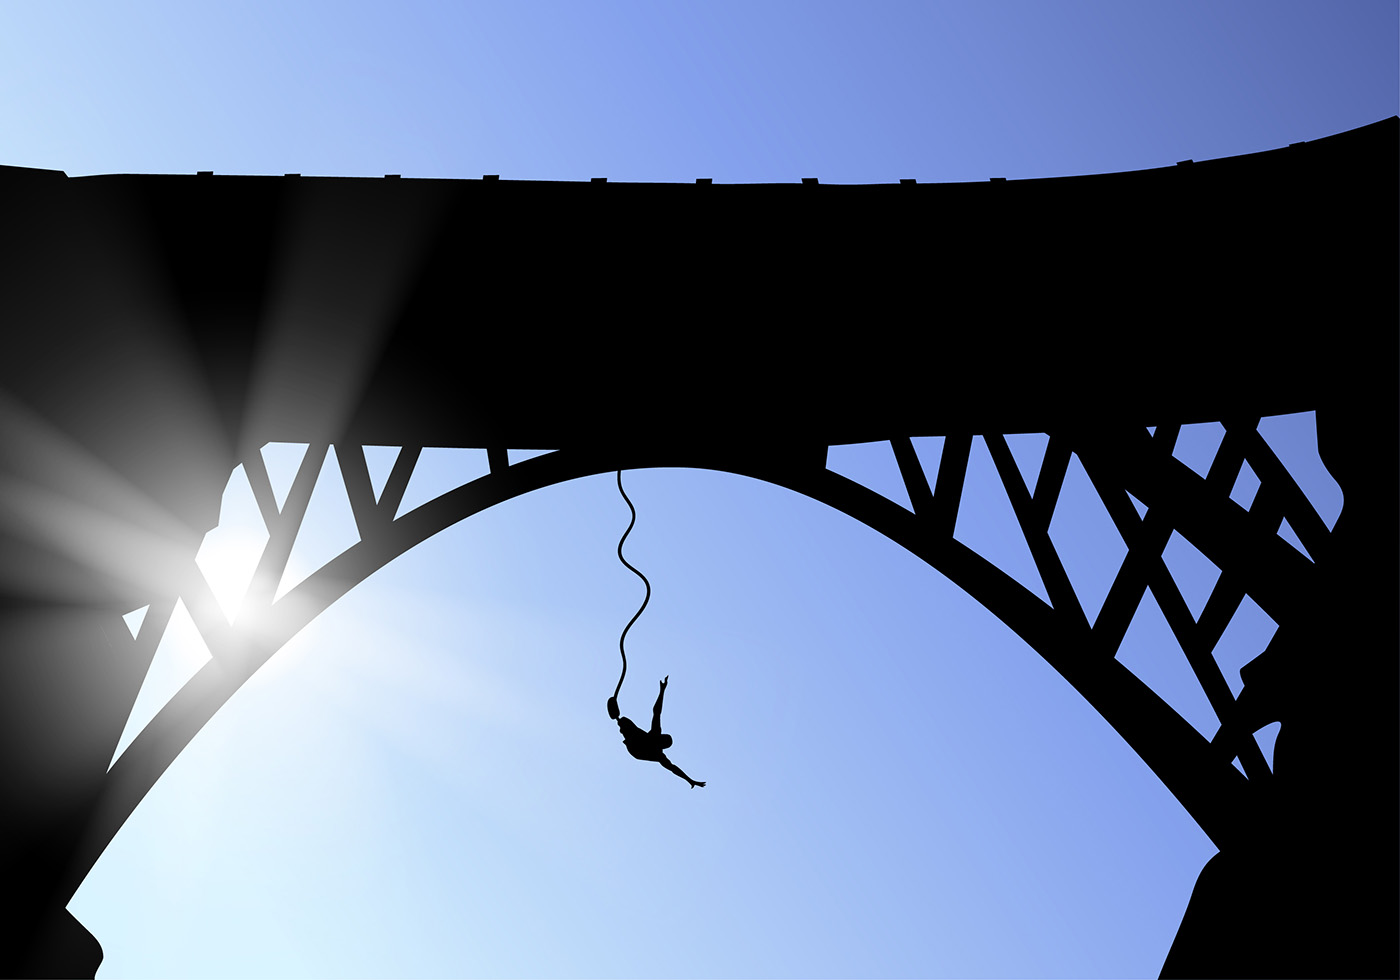 ilustração de bungee jumping com uma pessoa usando uma corda elástica caindo  pulando de uma altura no modelo de vetor de esportes radicais de desenho  animado plano 16638904 Vetor no Vecteezy